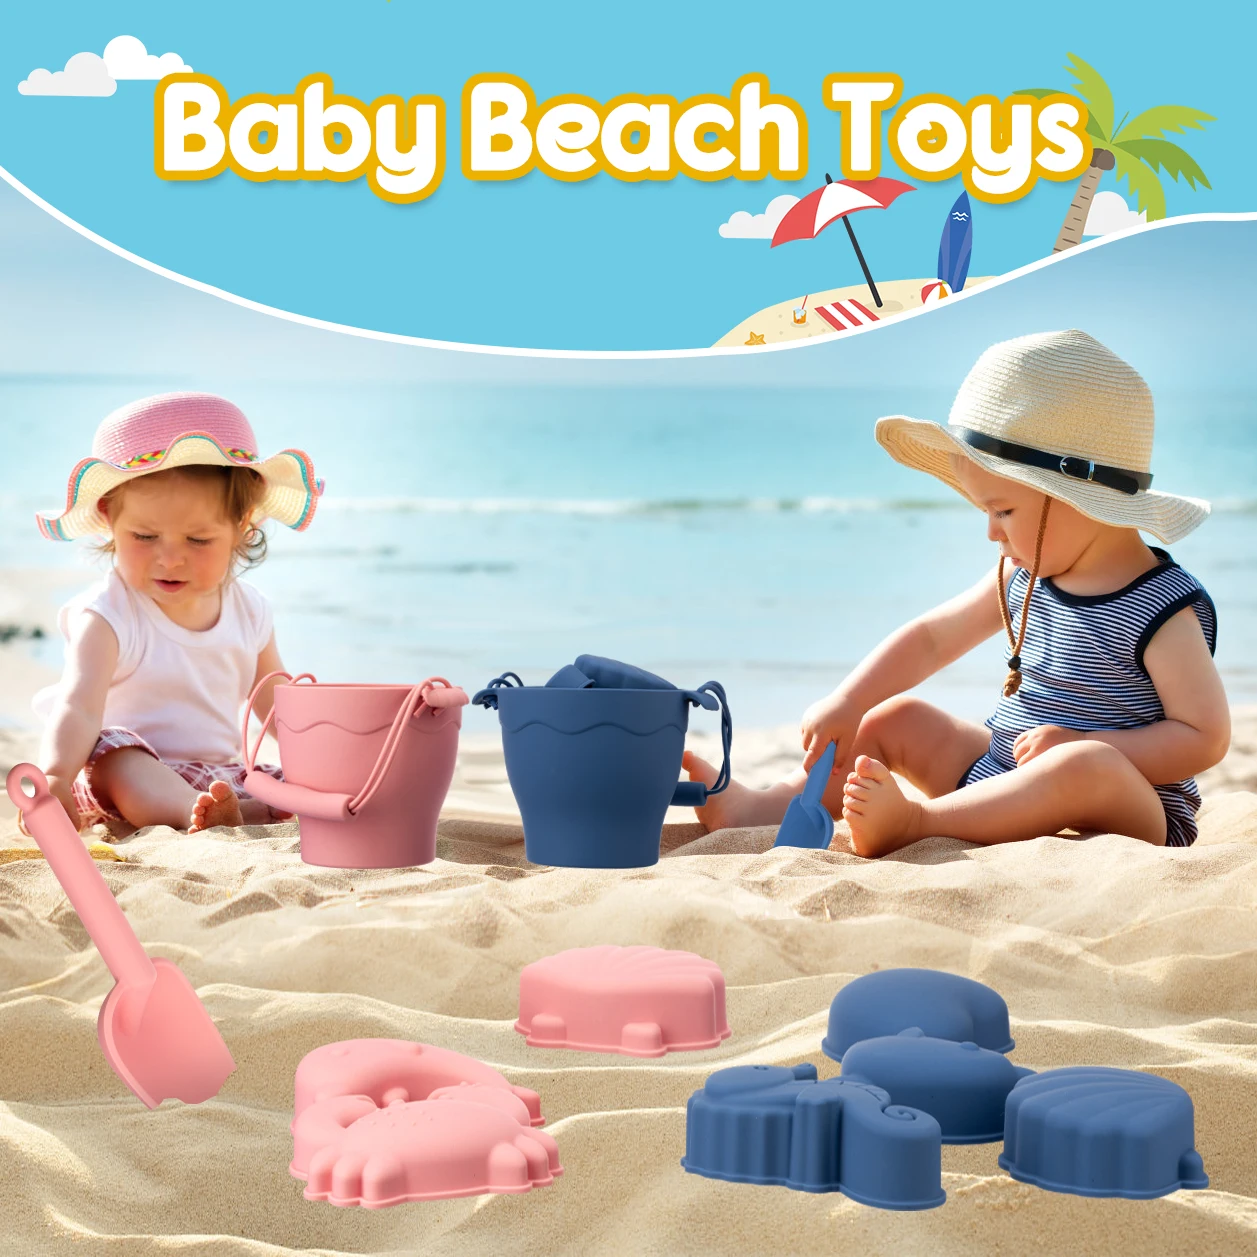 חוף חושי דלי צעצועים לילדים חול פלאג ' לשחק צעצועים לילדים הורה-ילדים אינטראקטיביים החוף מים משחקים, צעצועים עבור ילדים.